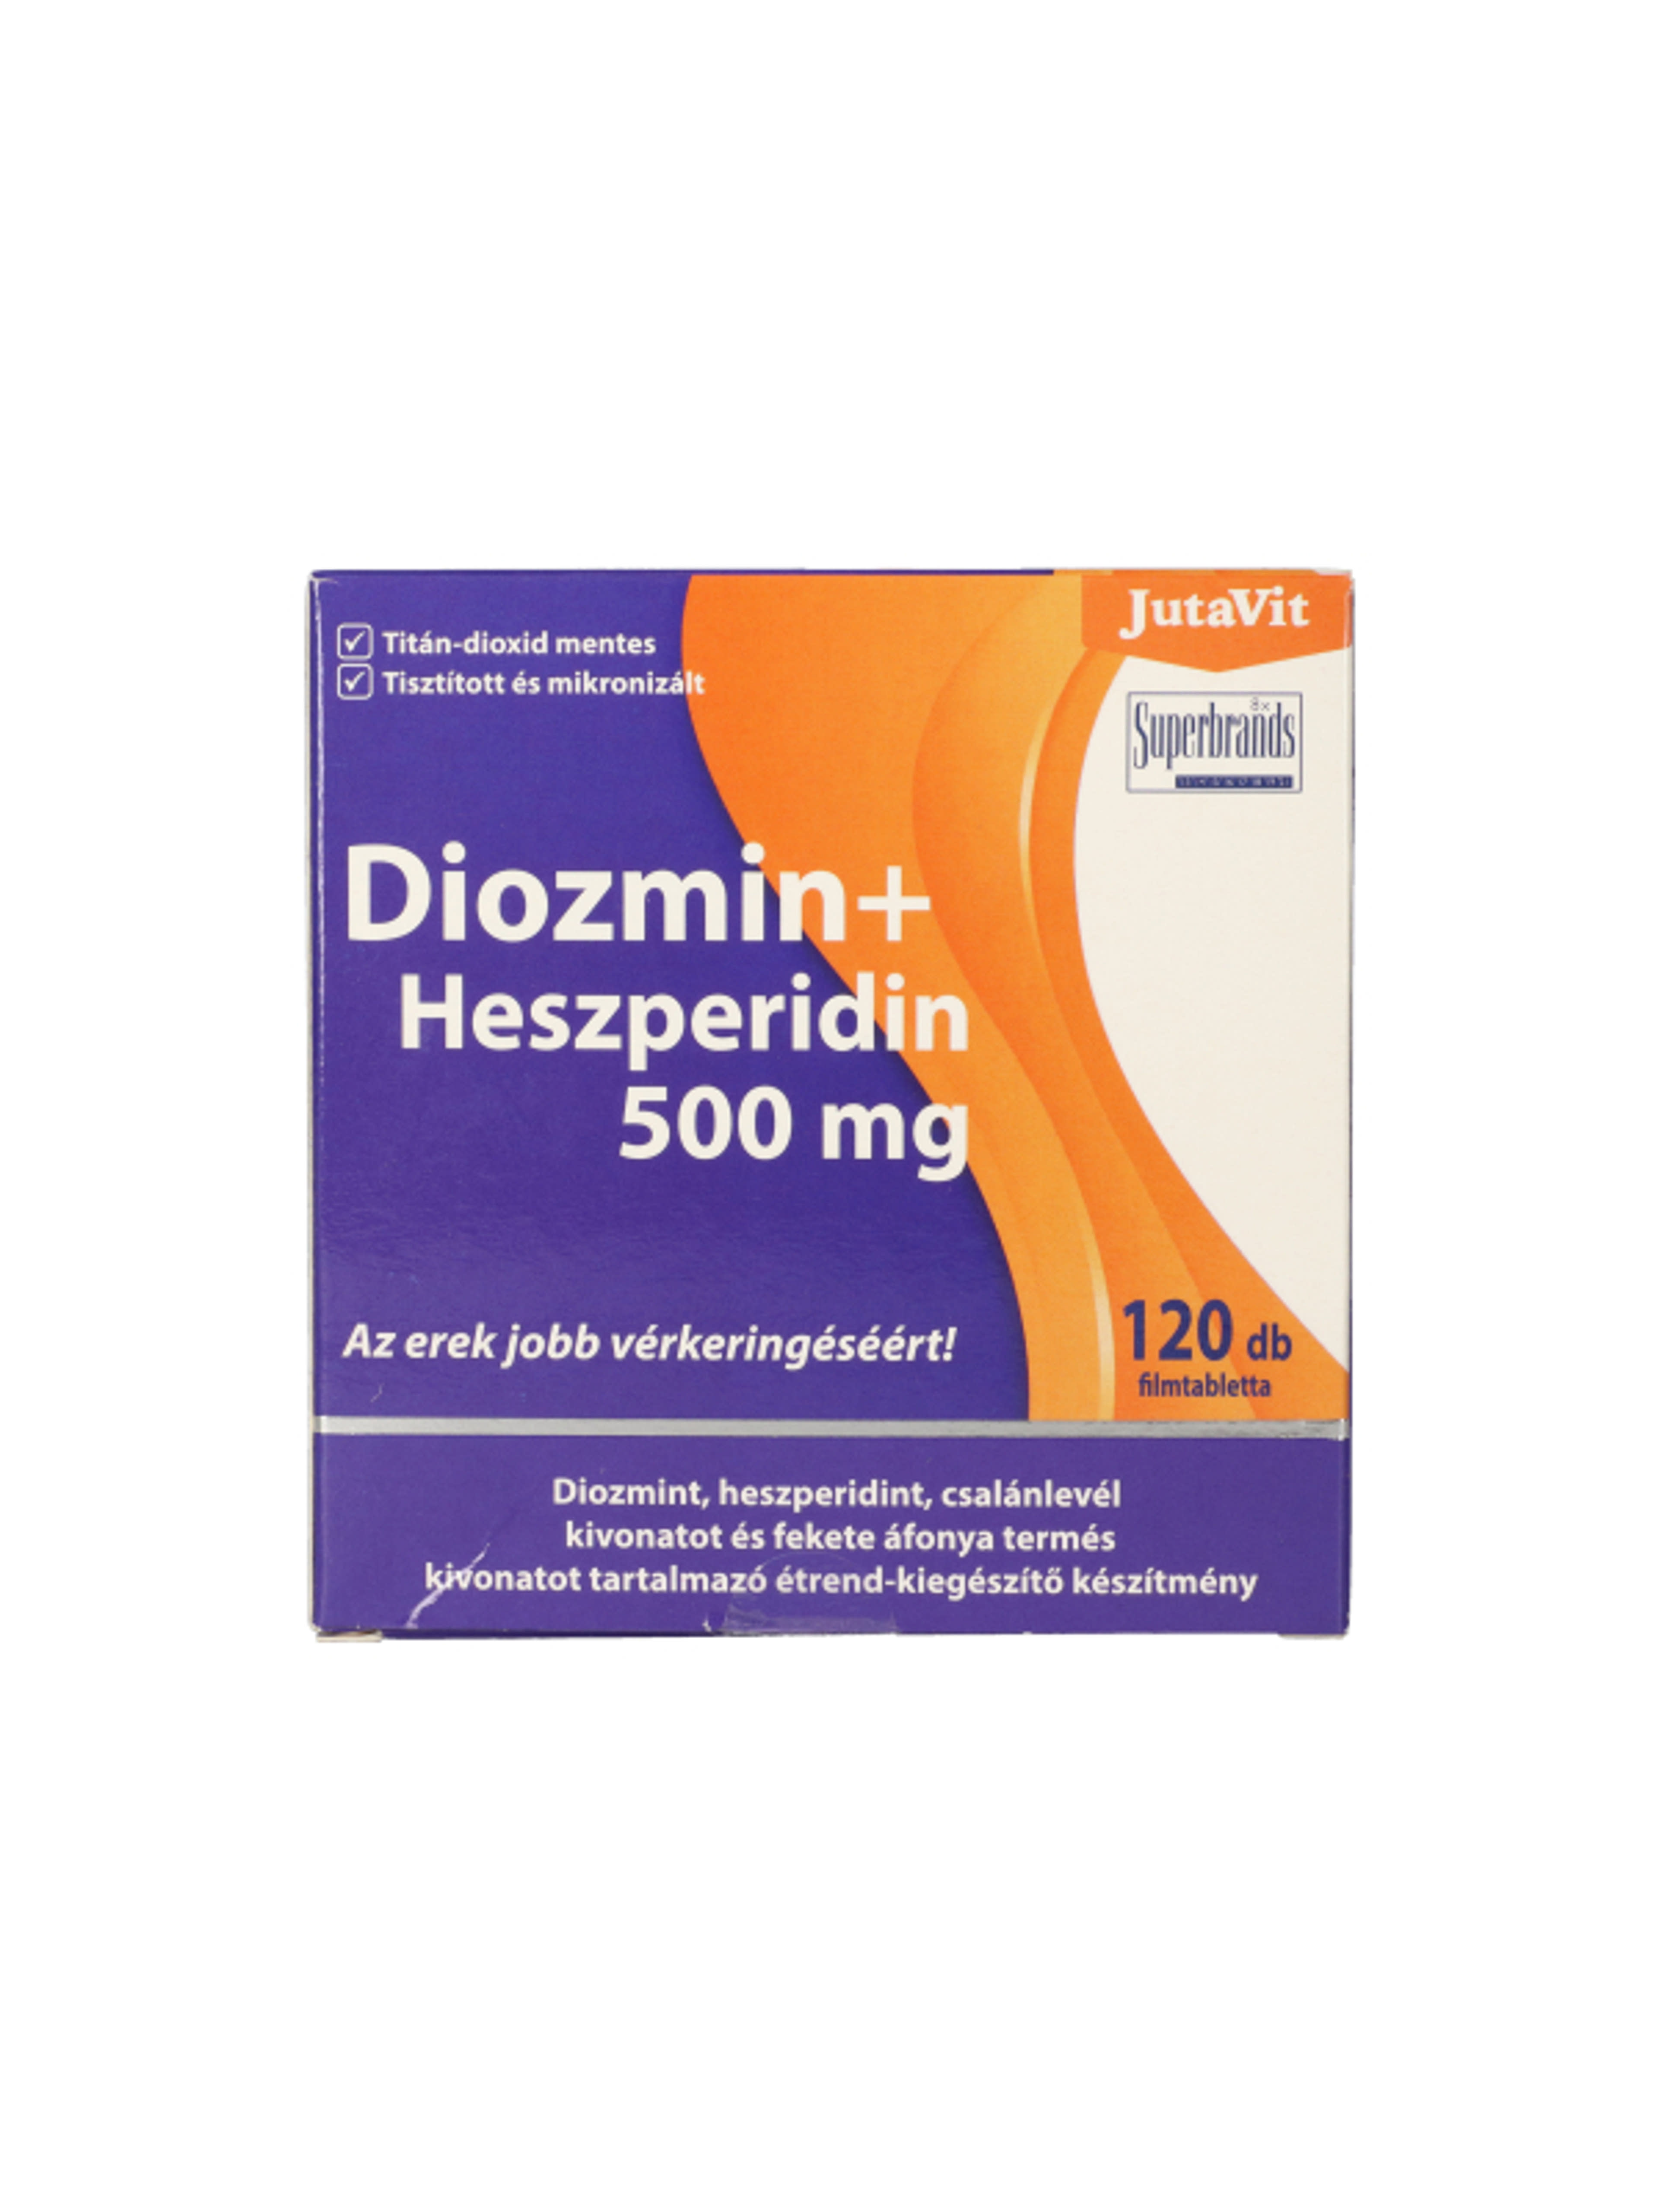 JutaVit Diozmin + Heszperidin tabletta, 500 mg - 120 db-1